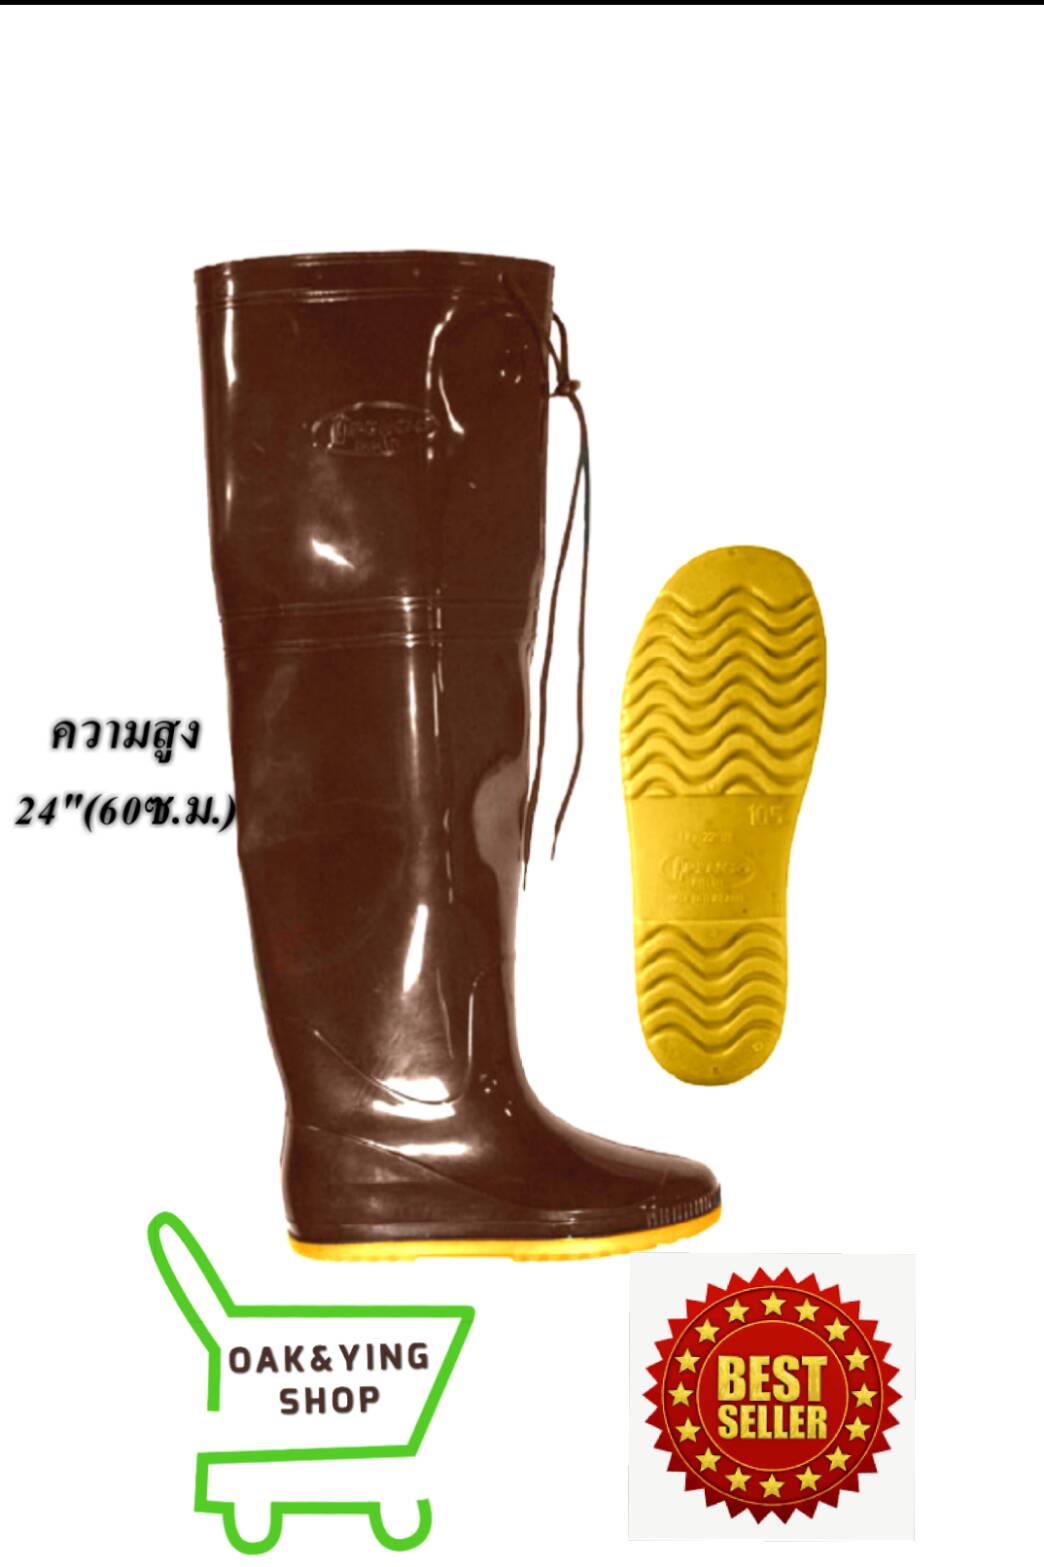 รองเท้าบู๊ตยางPenco2288สีชาพื้นเหลือง สูง24นิ้ว(60เซนติเมตร)